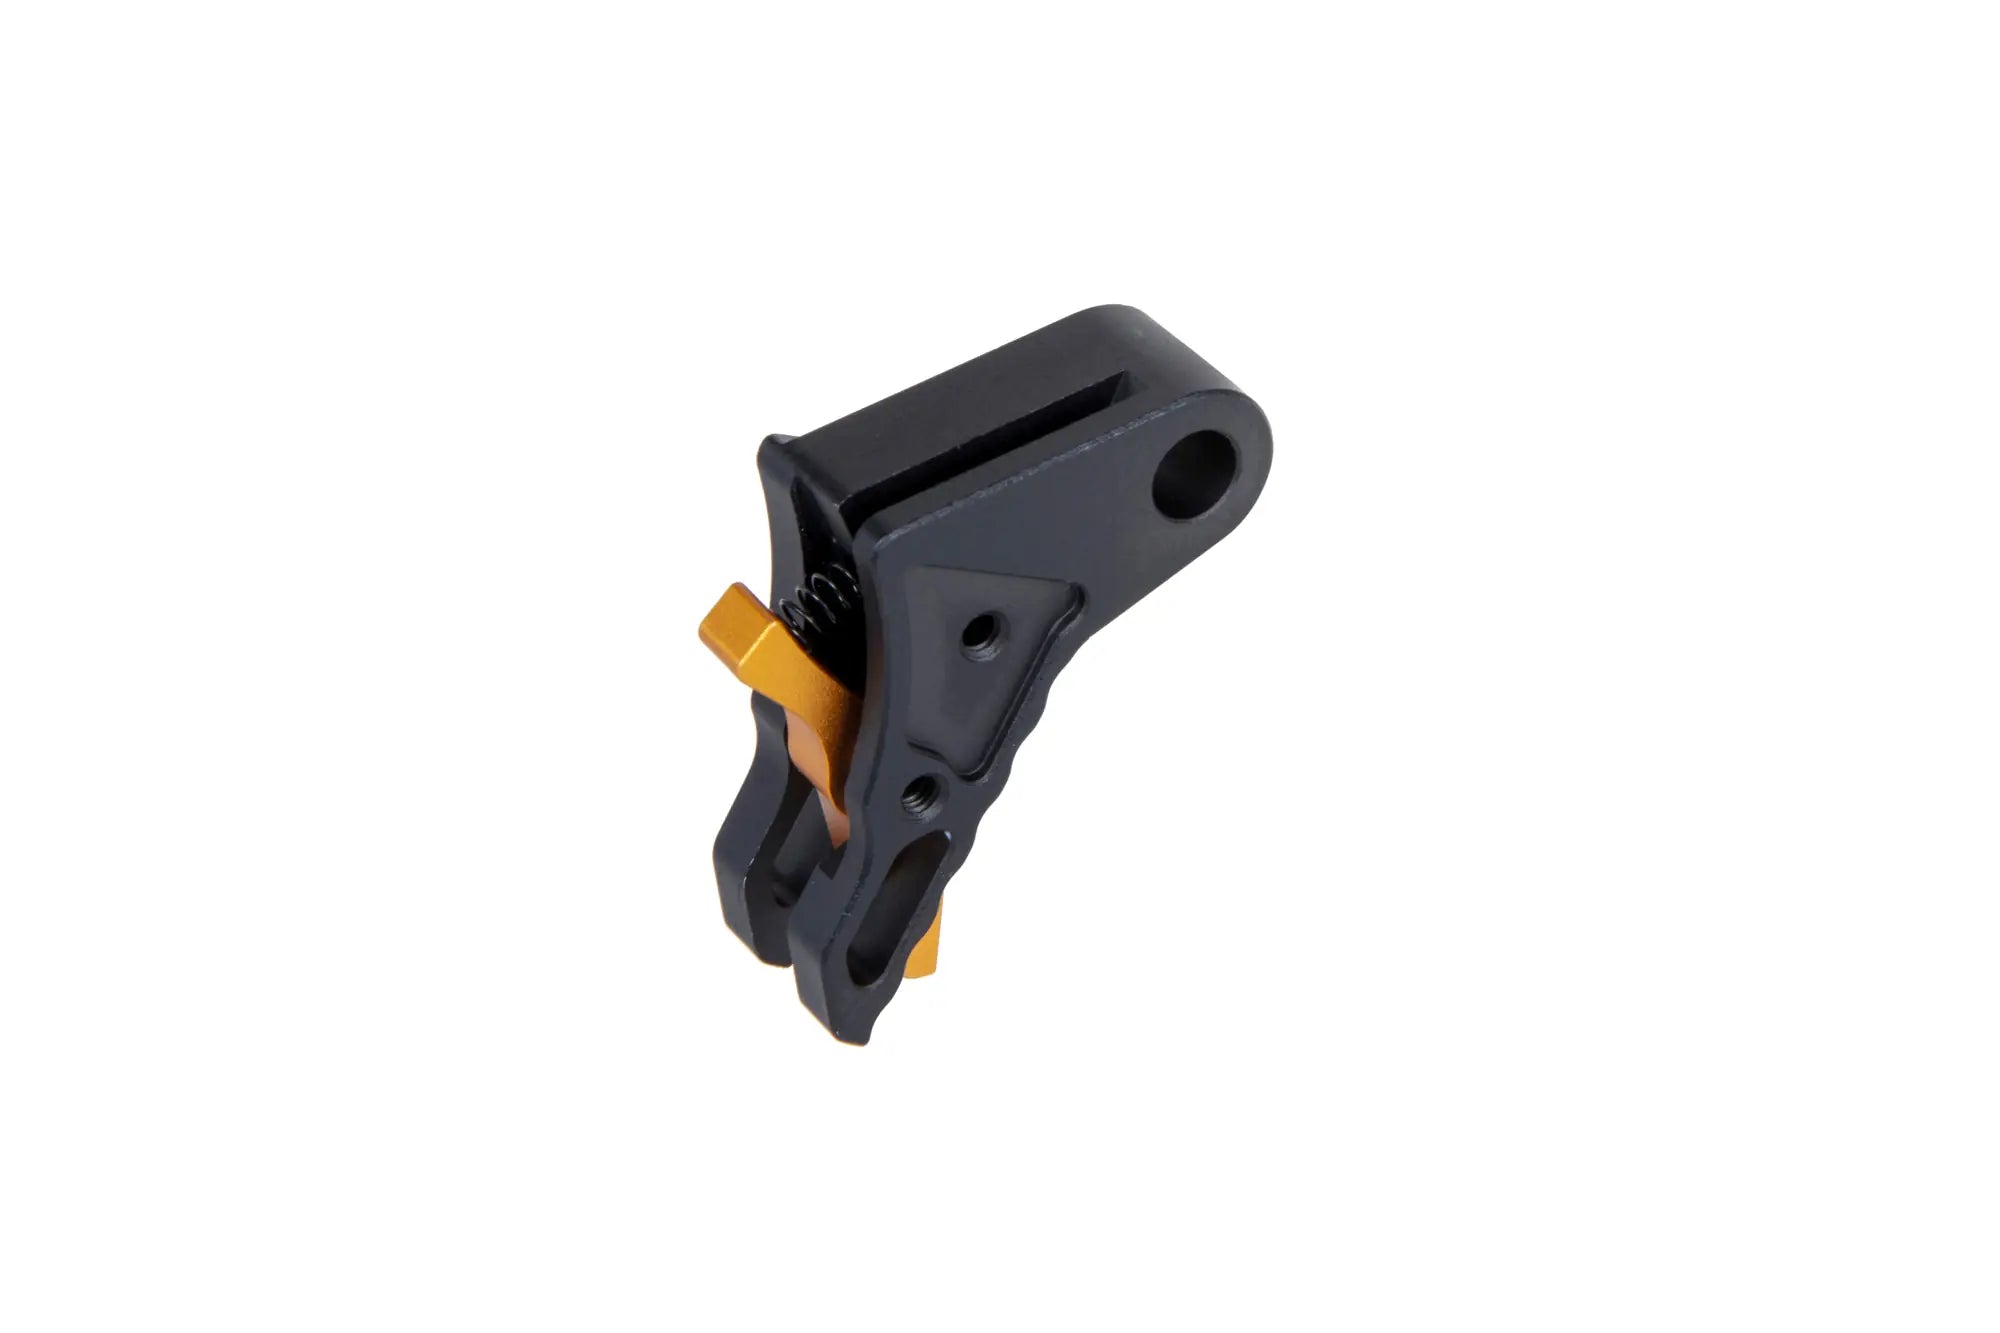 CNC aluminium trigger EX style for TM,WE G17/19/34 type 2 replicas Black/Gold